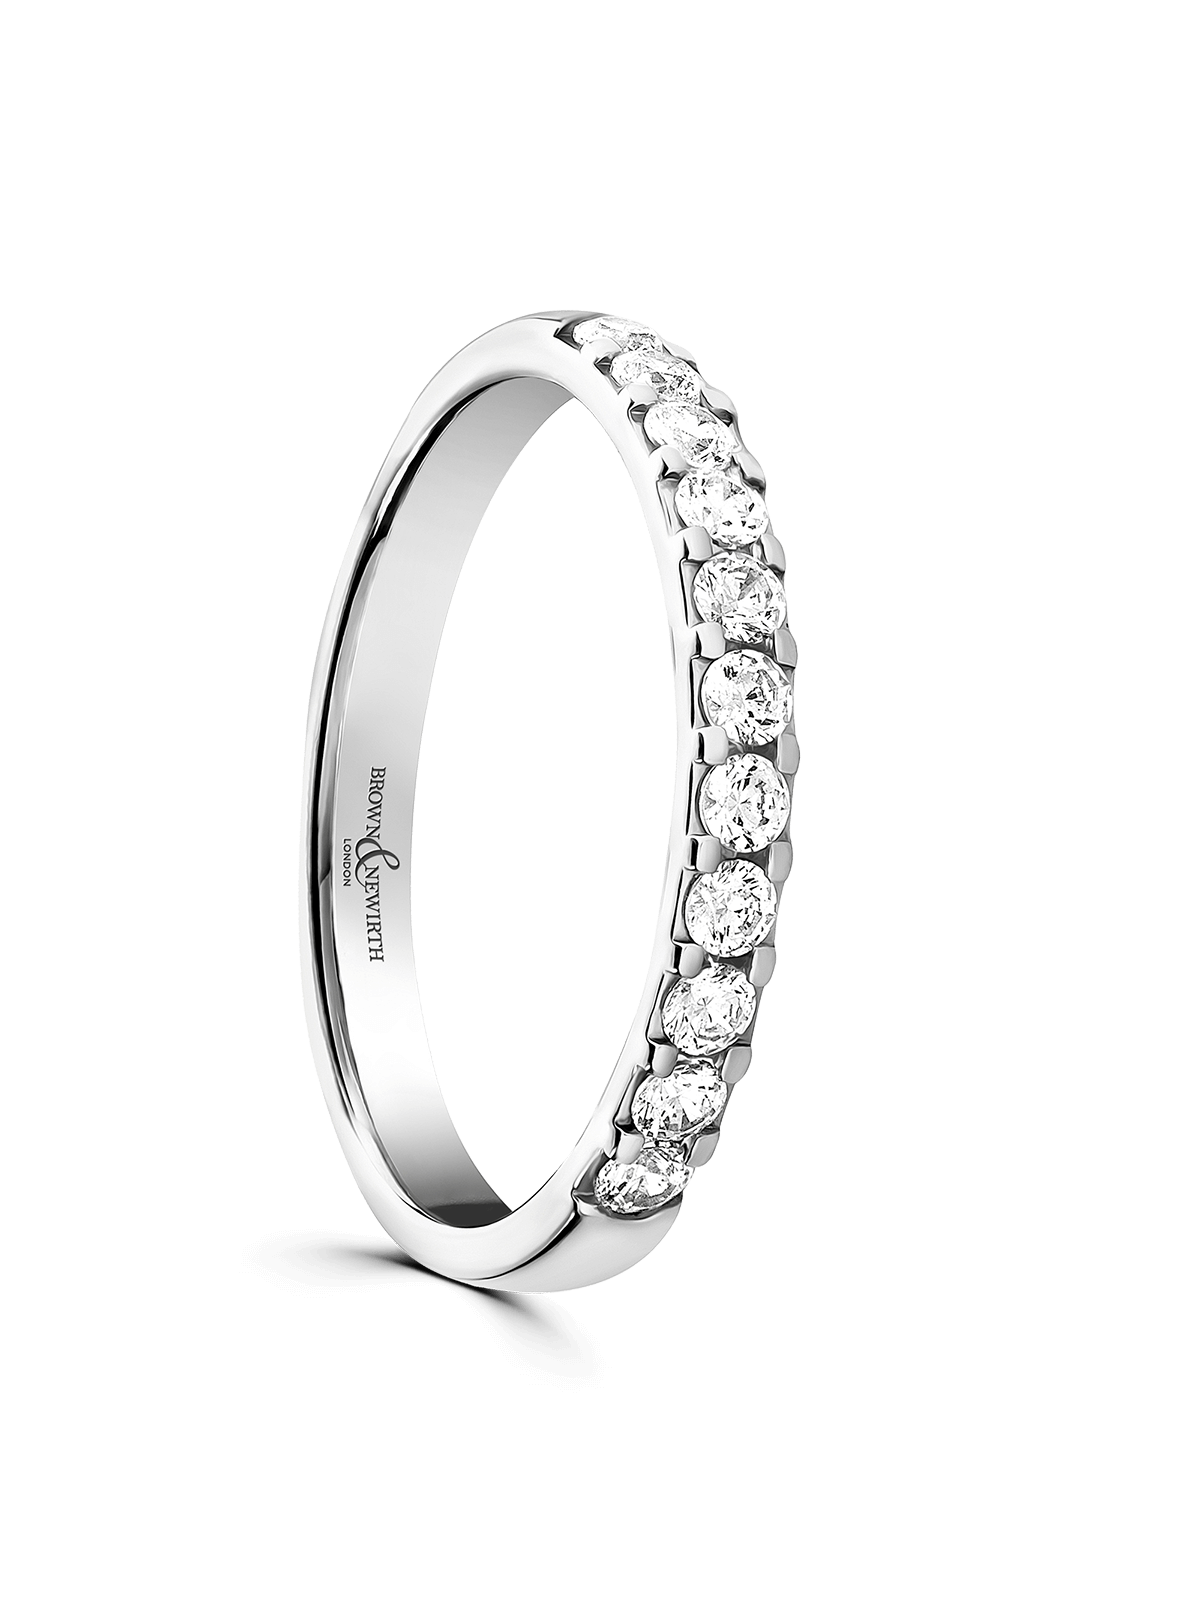 Brown & Newirth Treasure 0.33ct Brilliant Cut Diamond Wedding Ring in 9ct White Gold